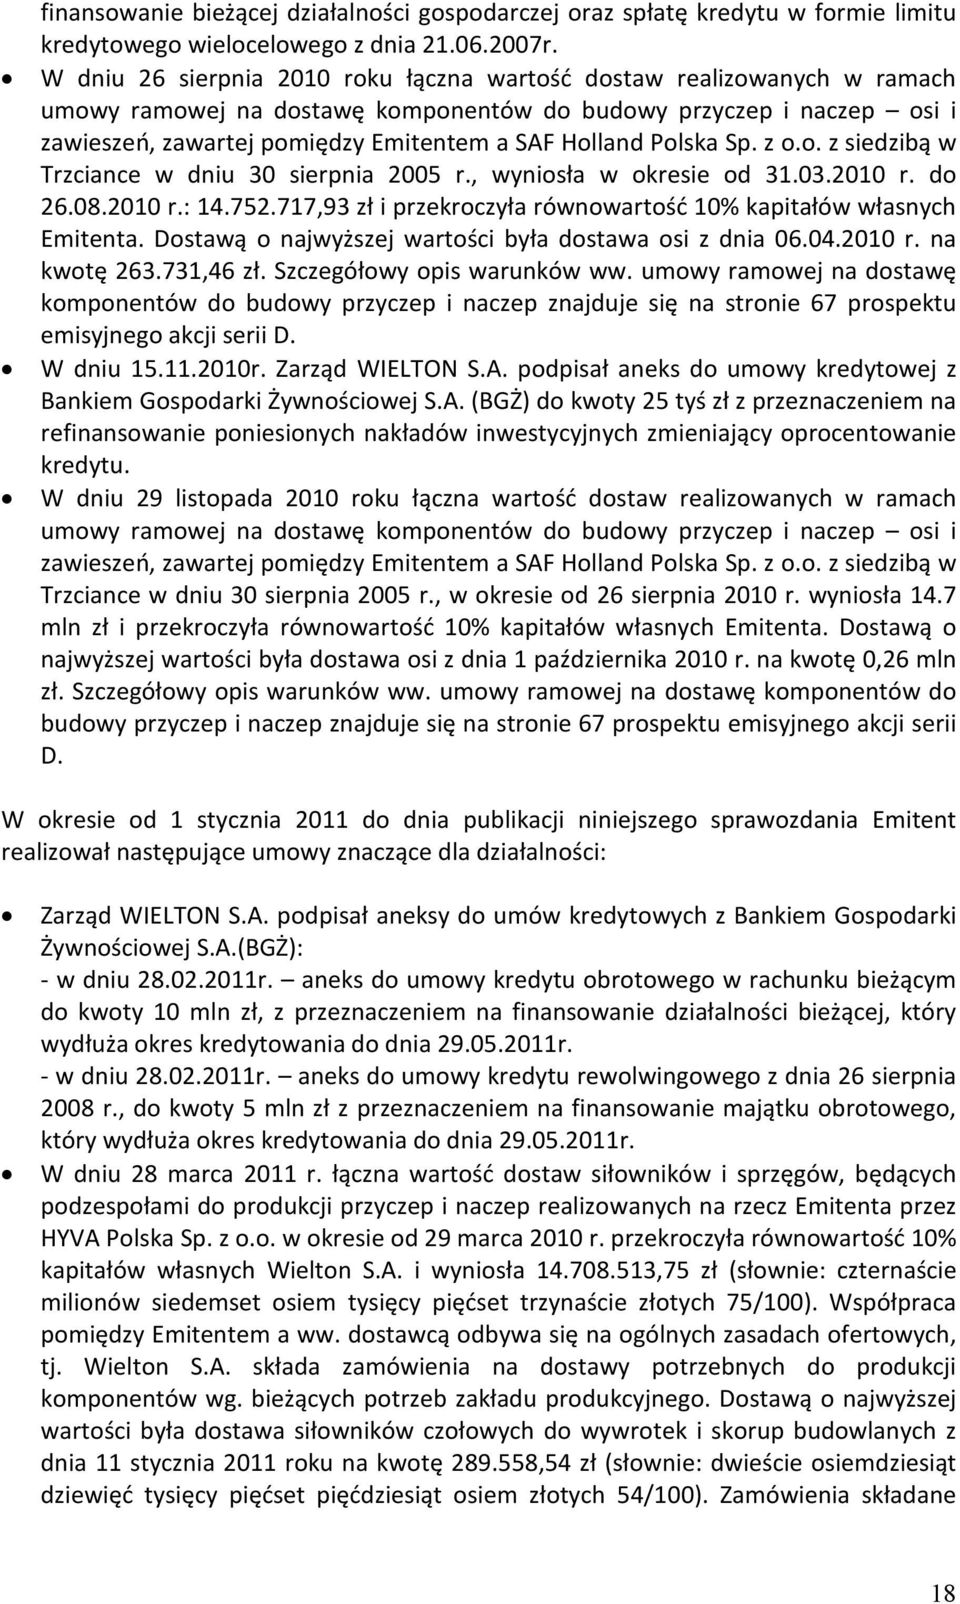 Polska Sp. z o.o. z siedzibą w Trzciance w dniu 30 sierpnia 2005 r., wyniosła w okresie od 31.03.2010 r. do 26.08.2010 r.: 14.752.717,93 zł i przekroczyła równowartość 10% kapitałów własnych Emitenta.